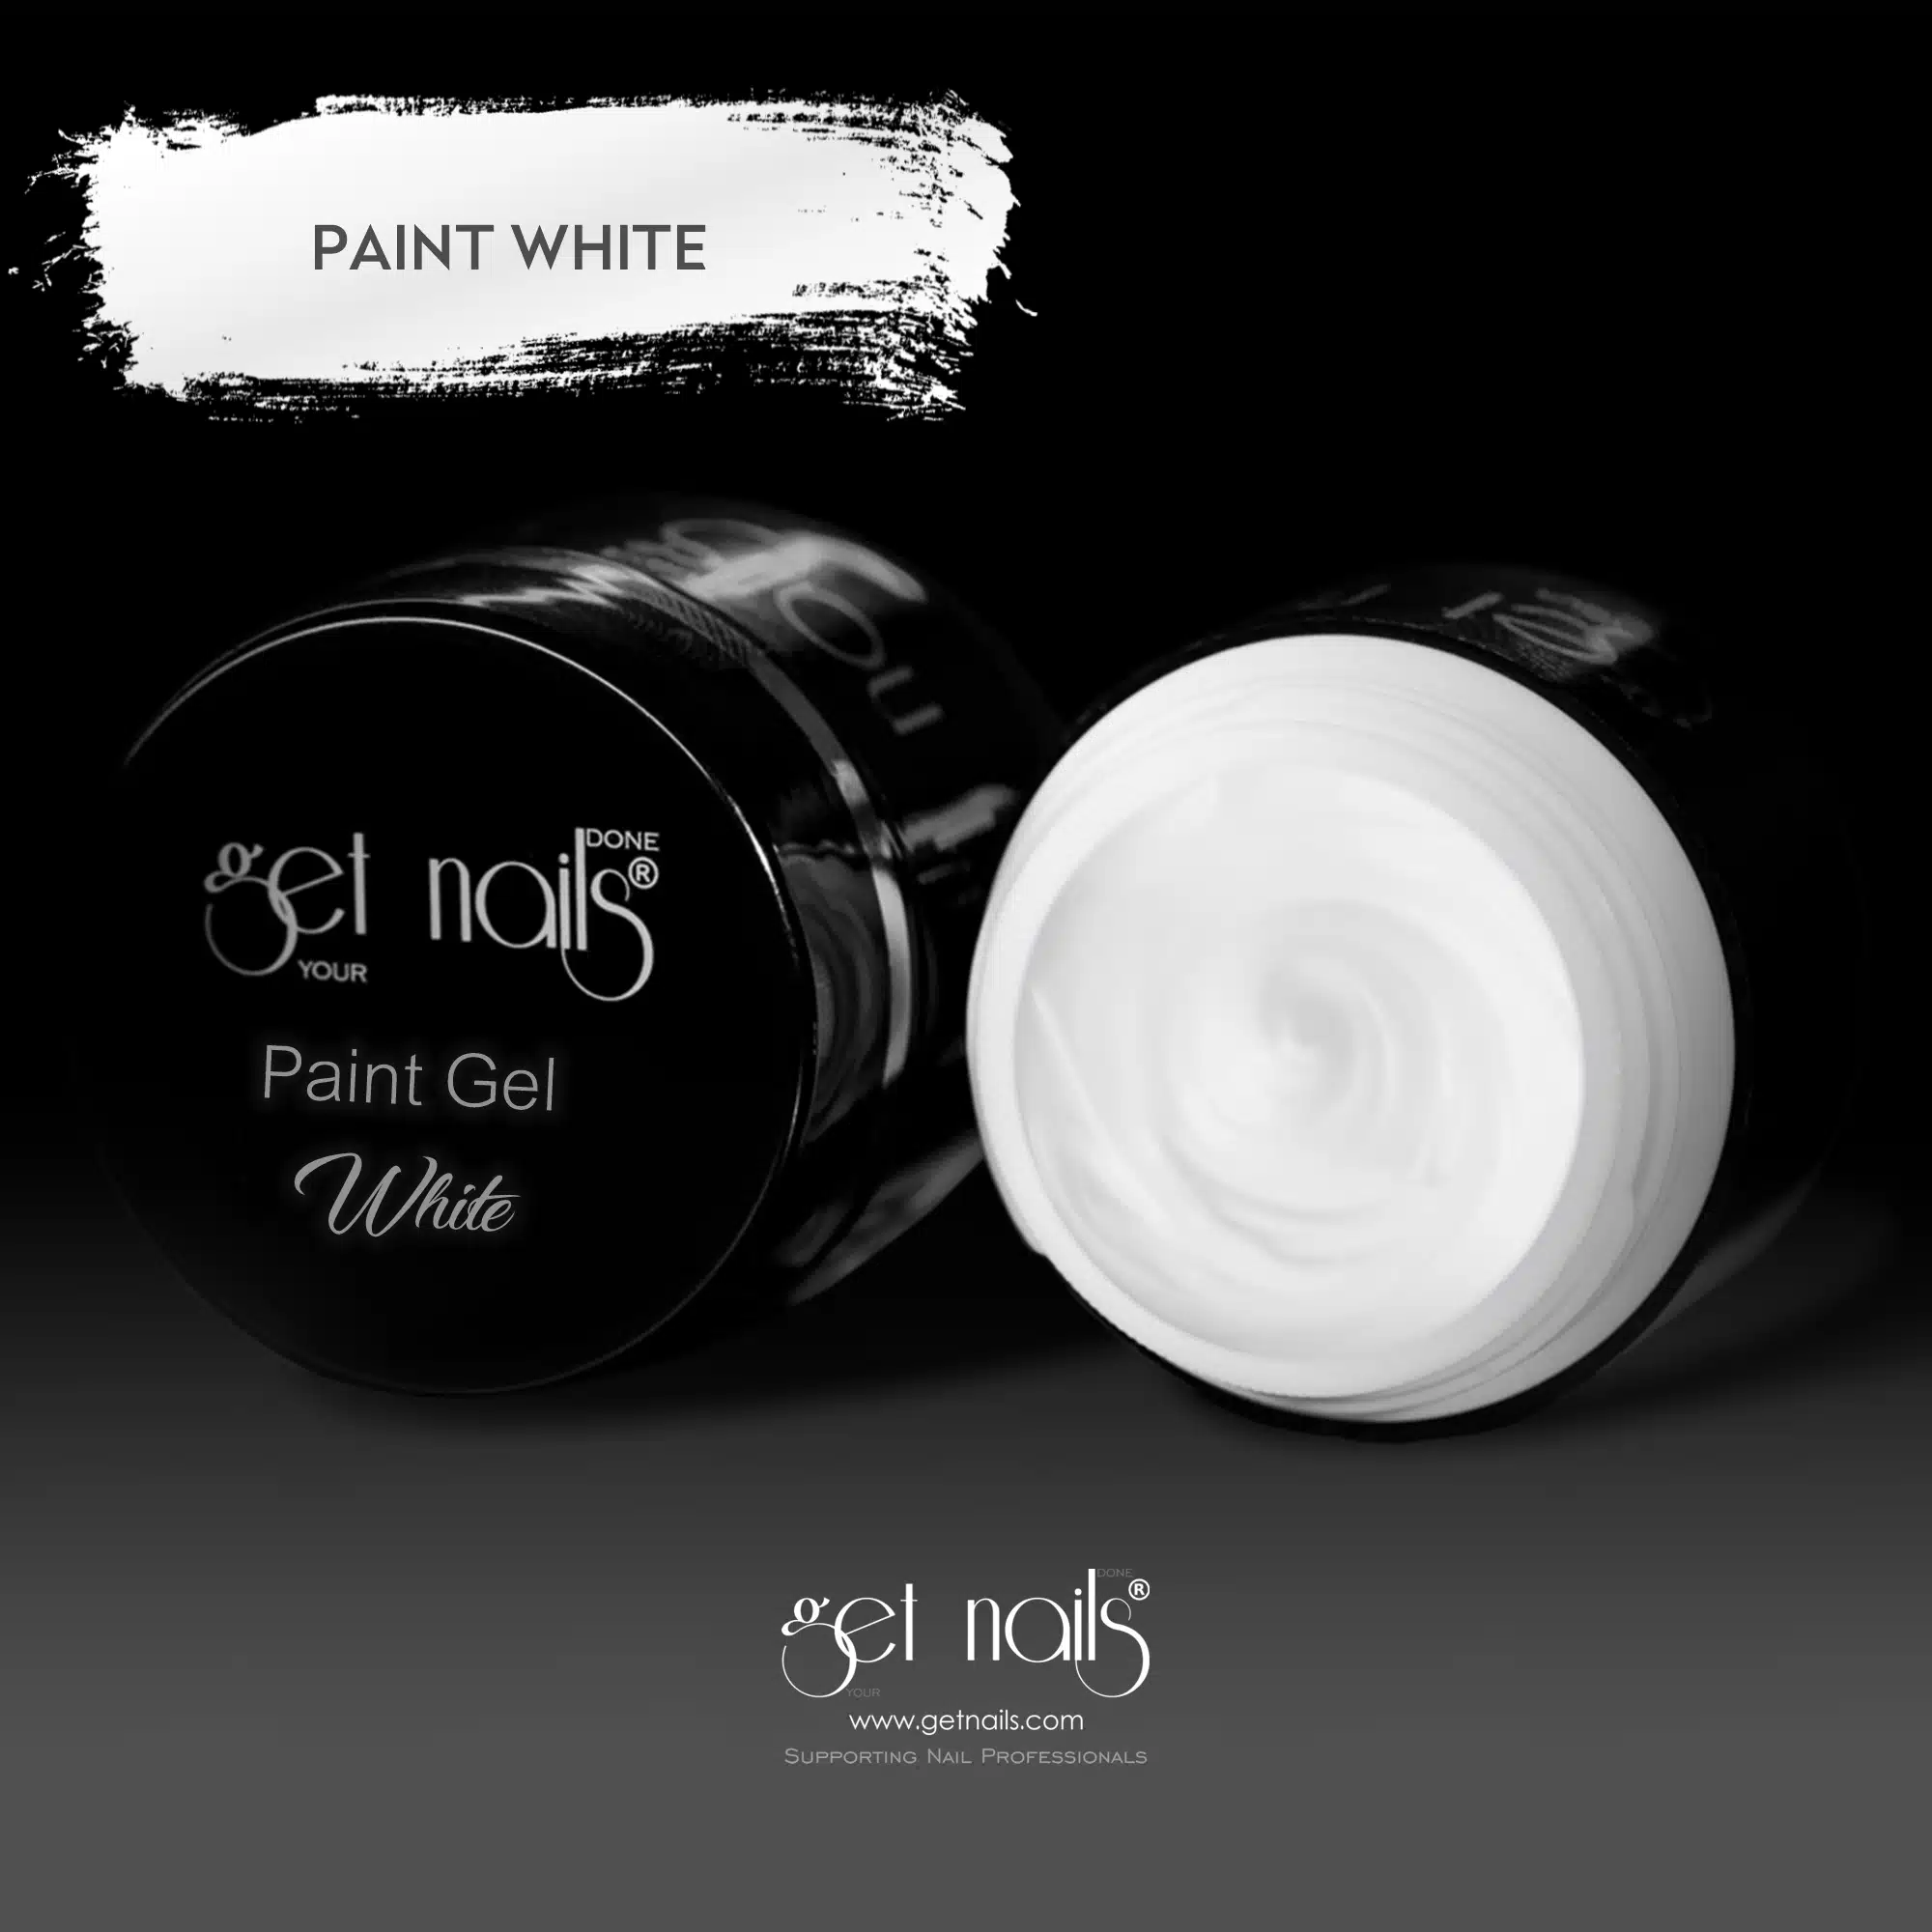 Get Nails Austria - Paint Gel White 5g